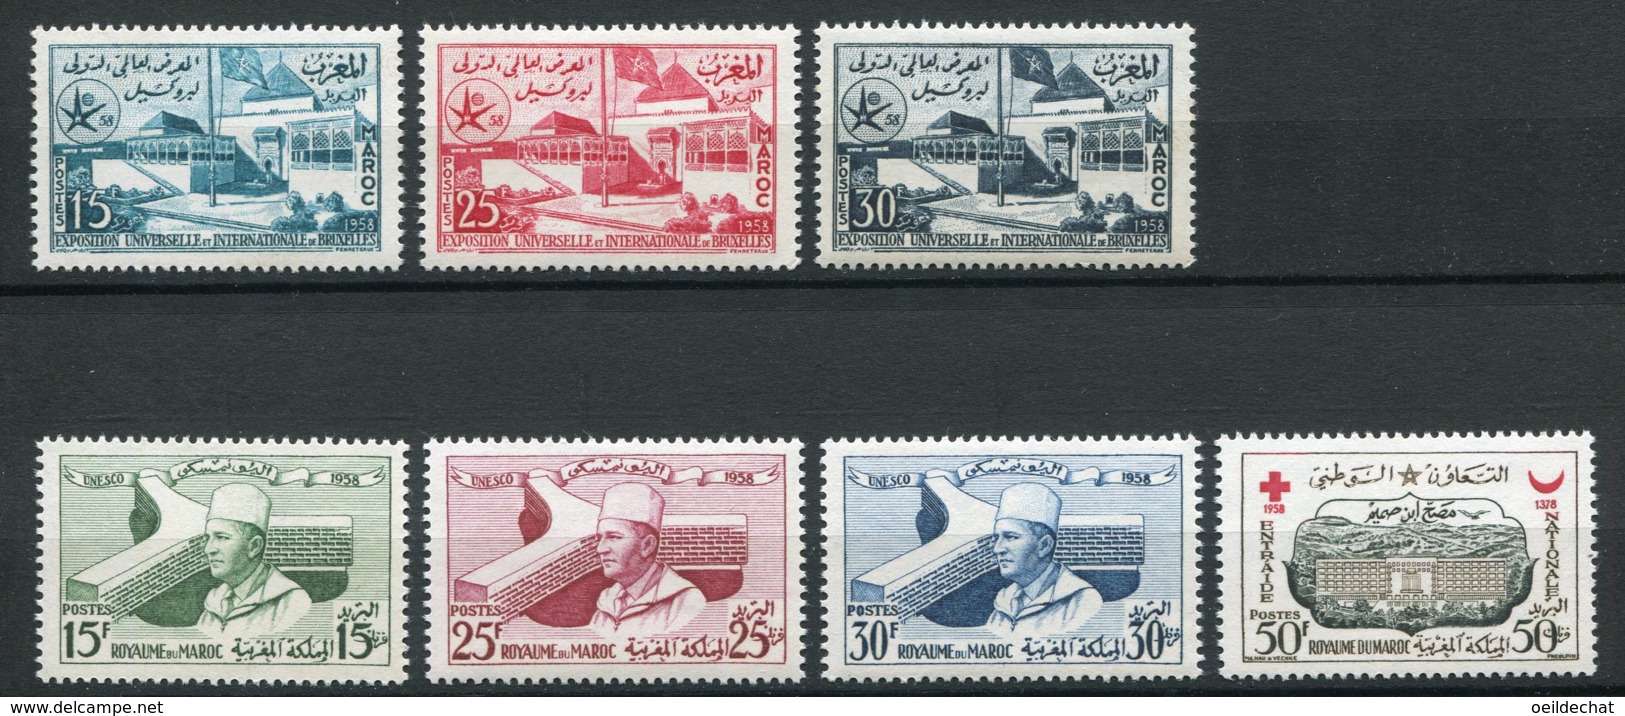 14774 MAROC N° 383/5, 386/8, 389 ** Exposition Universelle, UNESCO, Entraide Nationale   1958  TB/TTB - Maroc (1956-...)